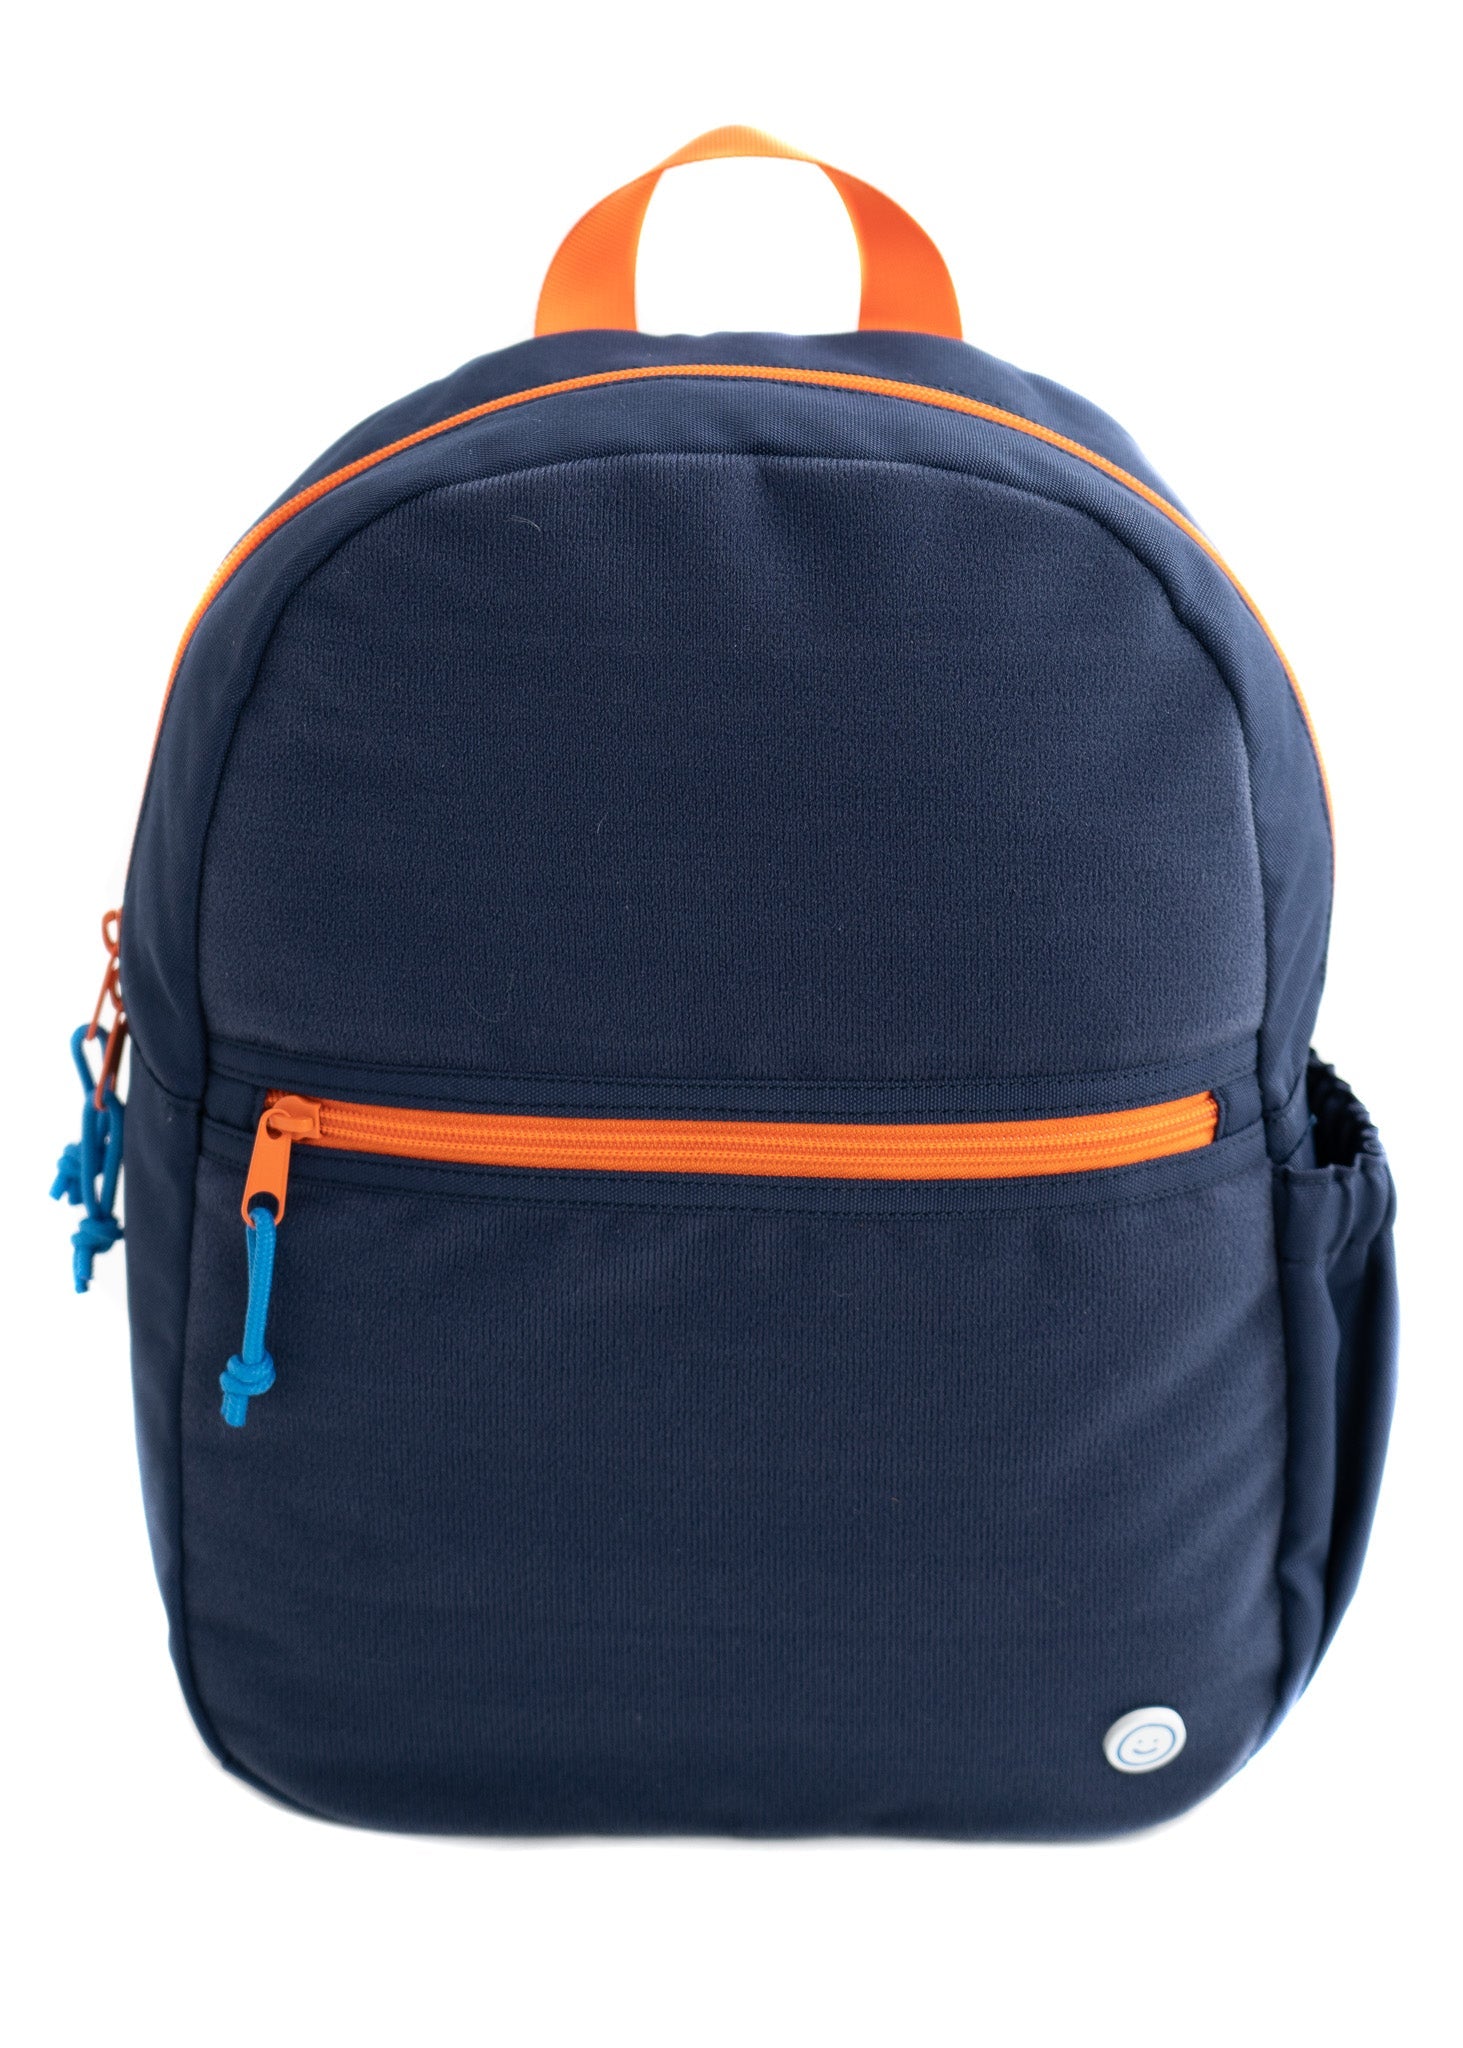 Hook & Loop Sport Kids Backpack - Navy / Citrus